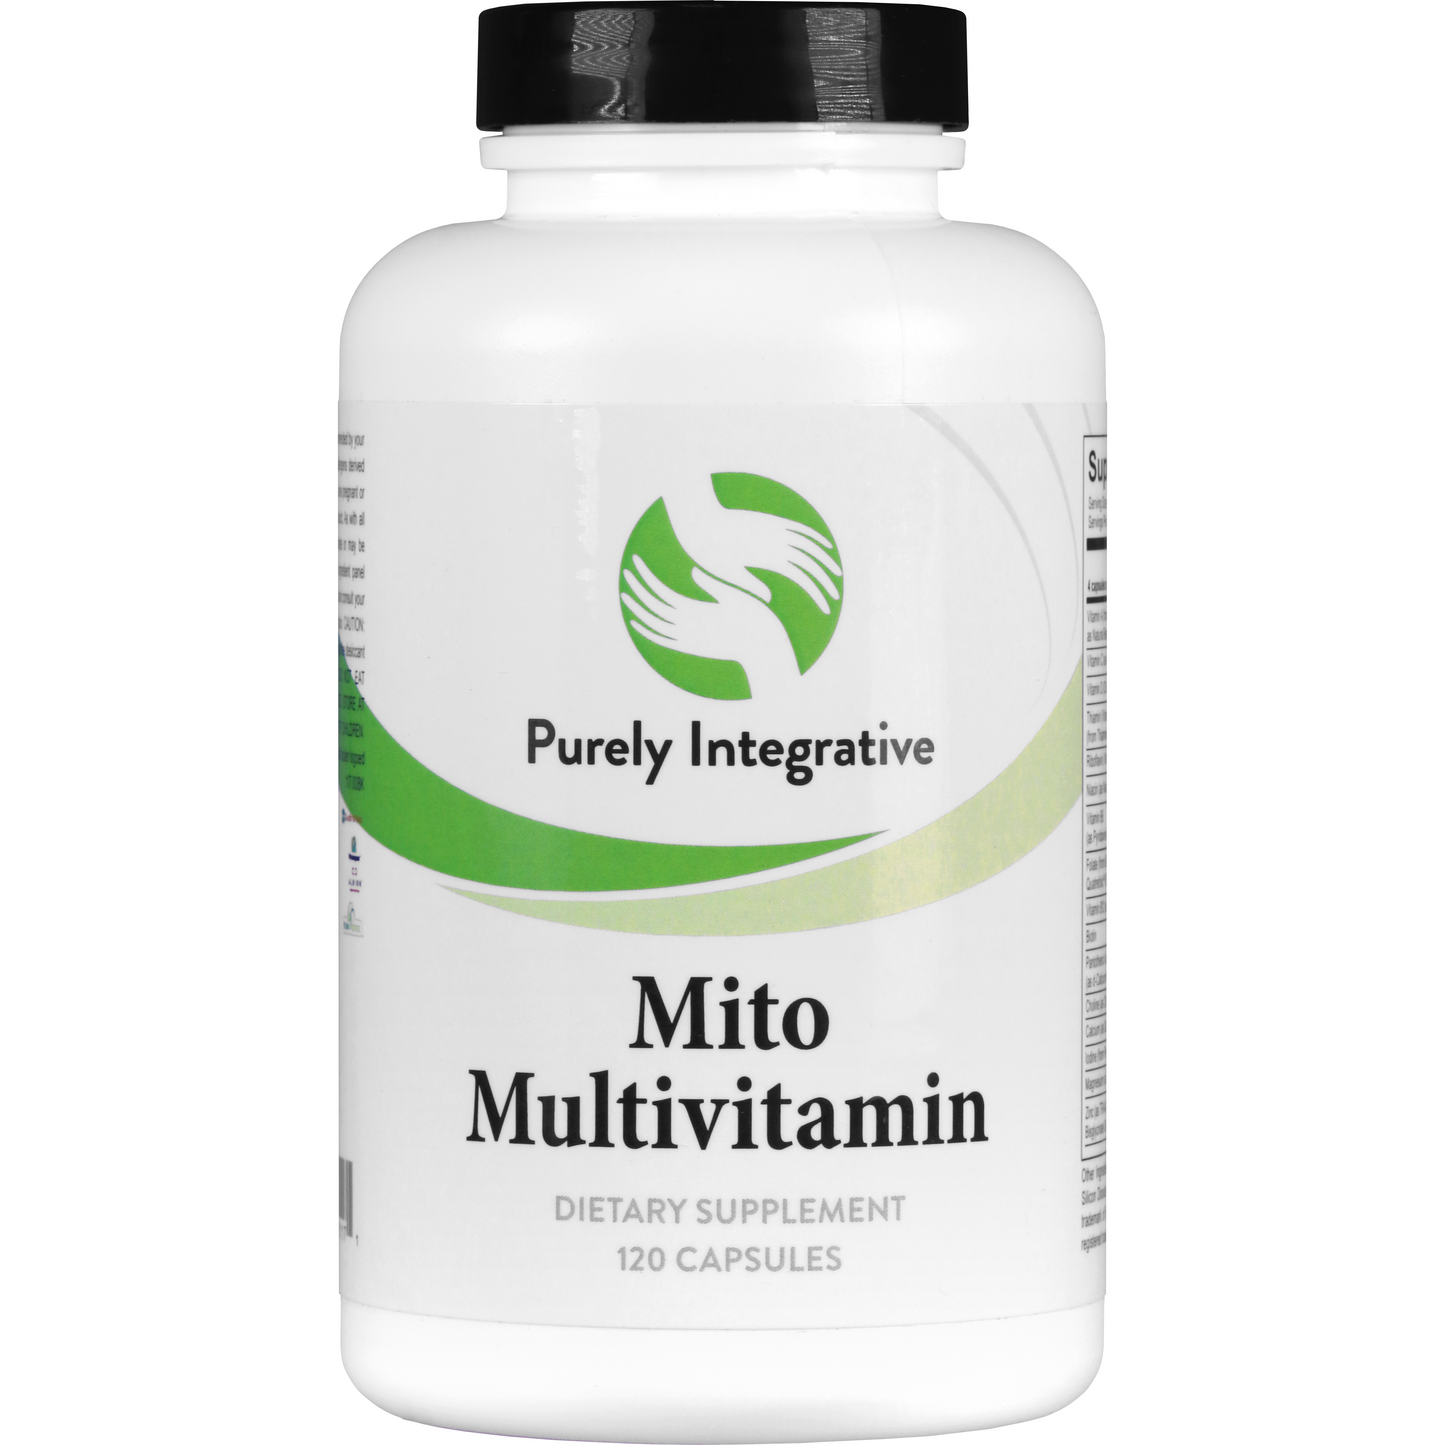 Mito Multivitamin